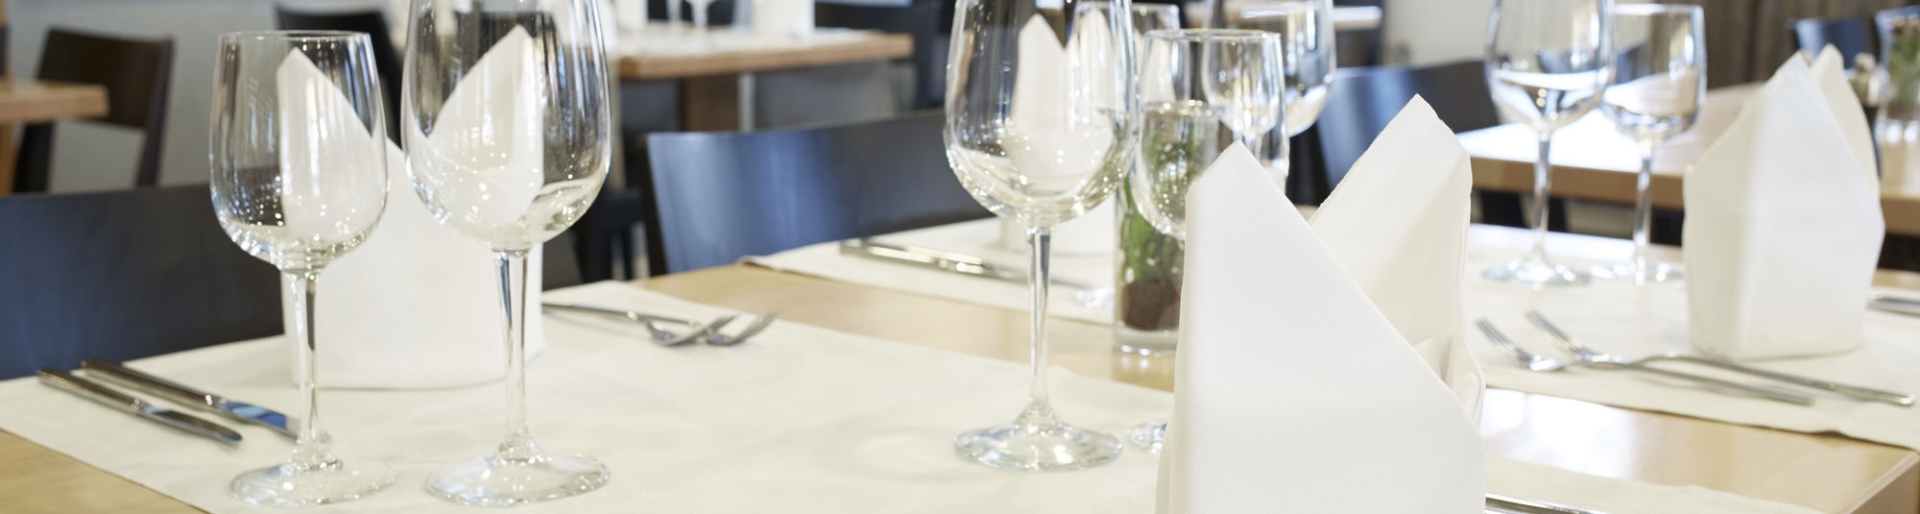 Stilvoll eingedeckter Tisch mit Servietten und Weingläsern 